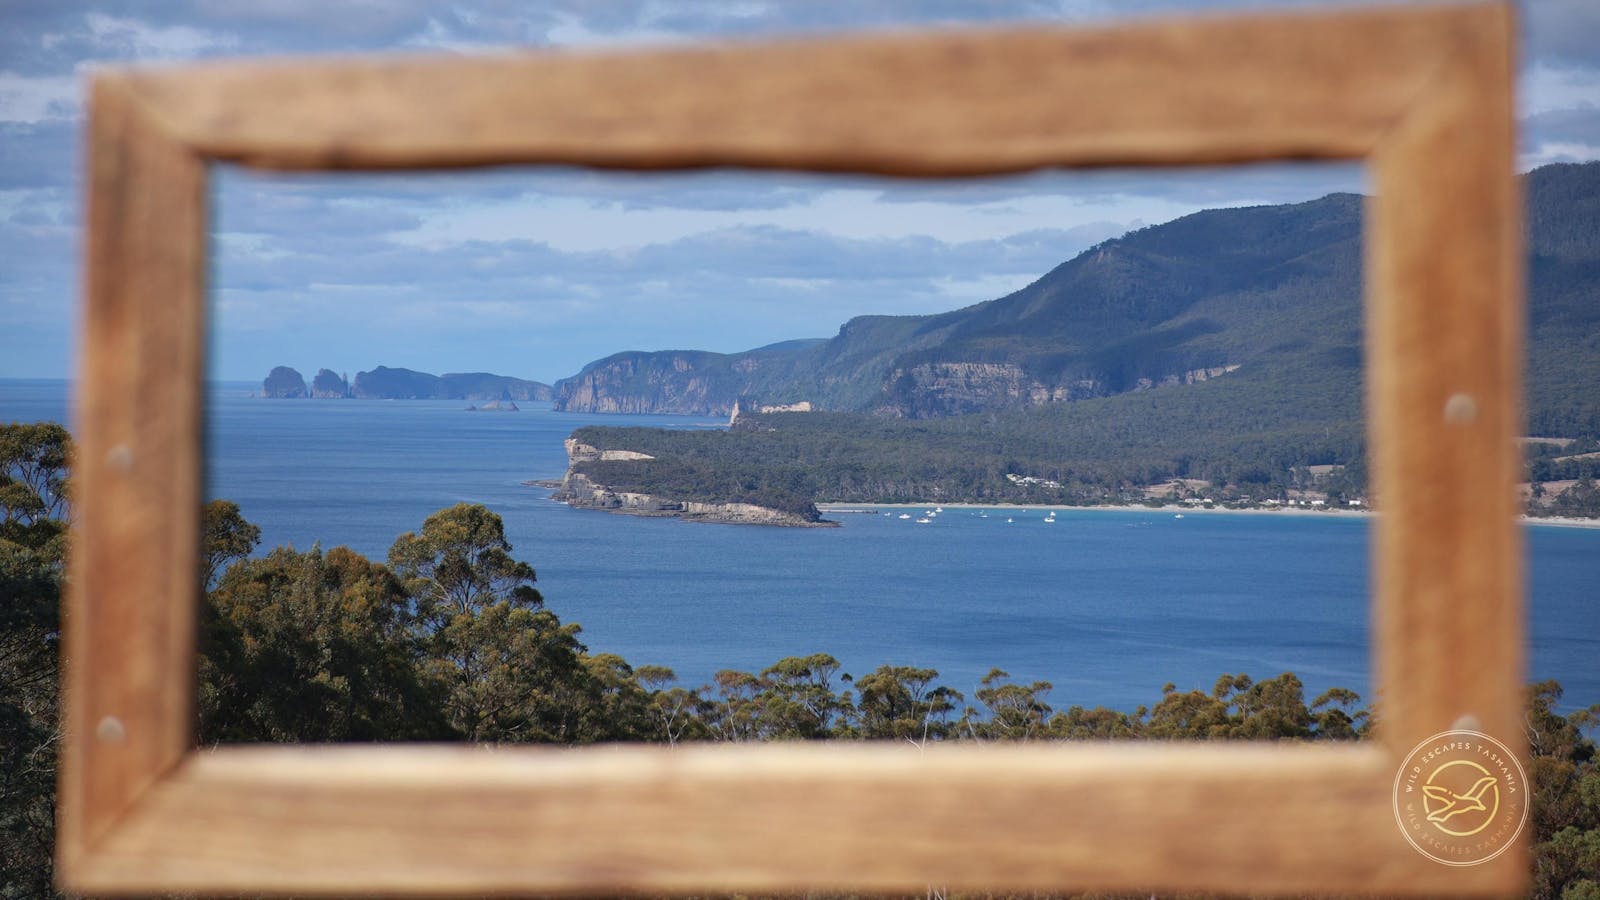 Tasman Bay National Park